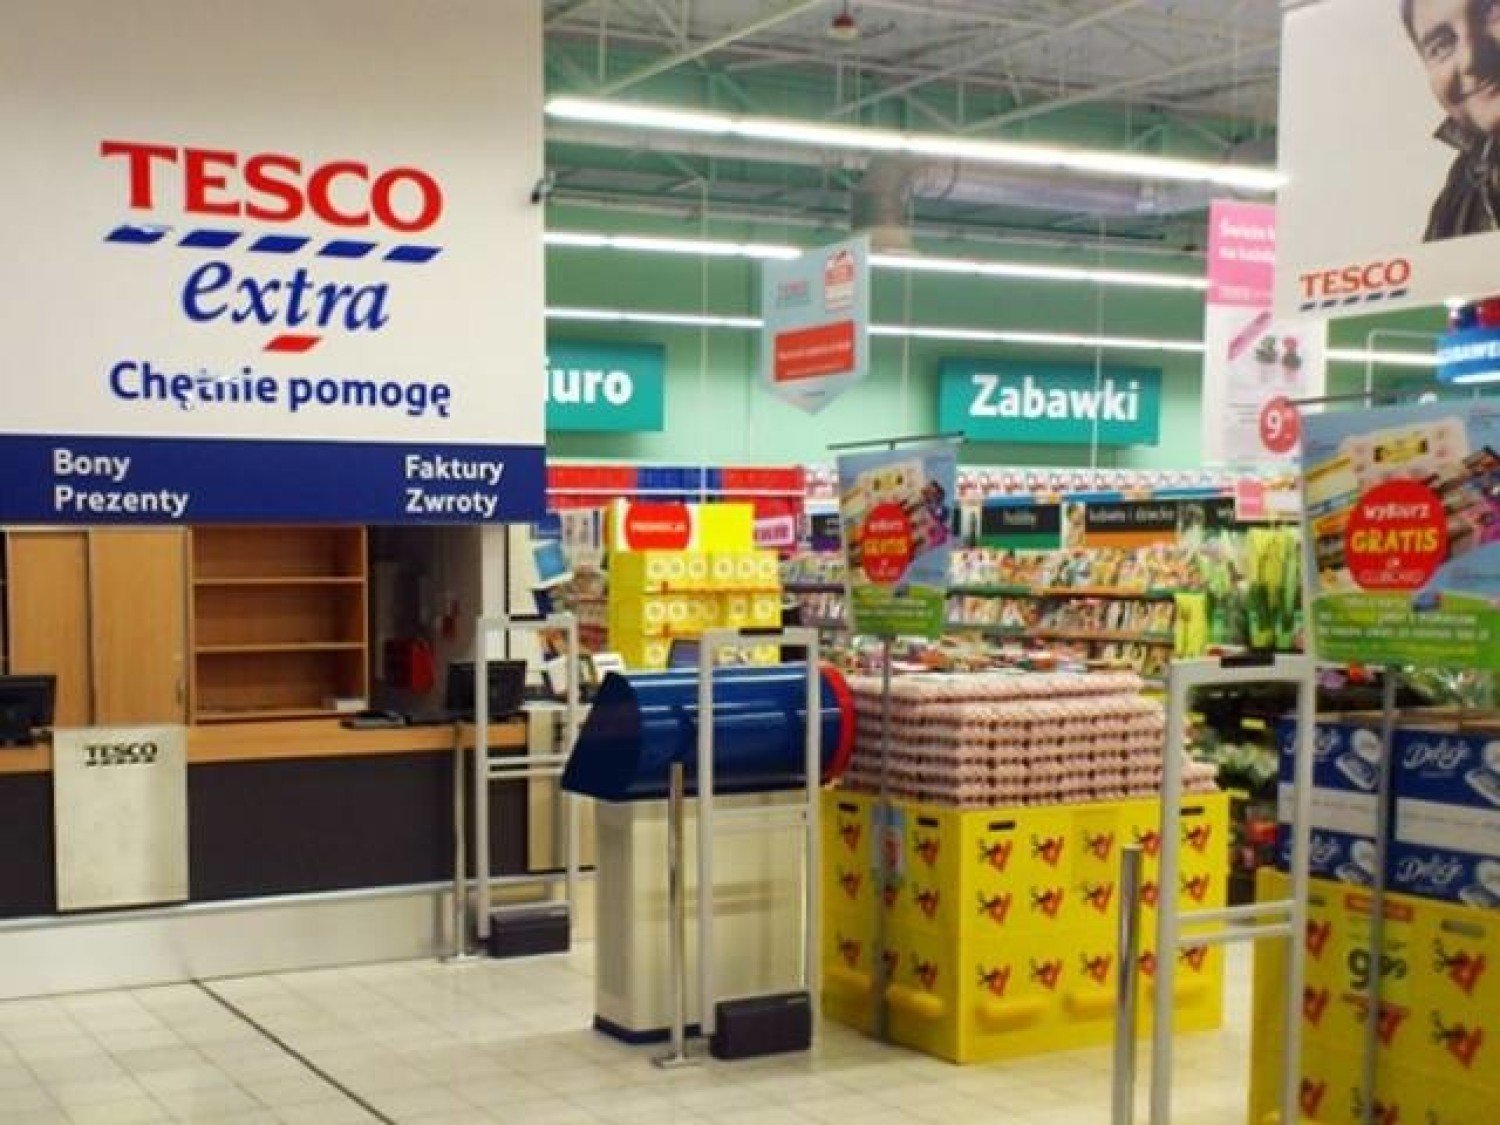 Śląskie: Do zamknięcia 7 supermarketów TESCO. Zobacz, gdzie [LISTA SKLEPÓW]  | śląskie Nasze Miasto